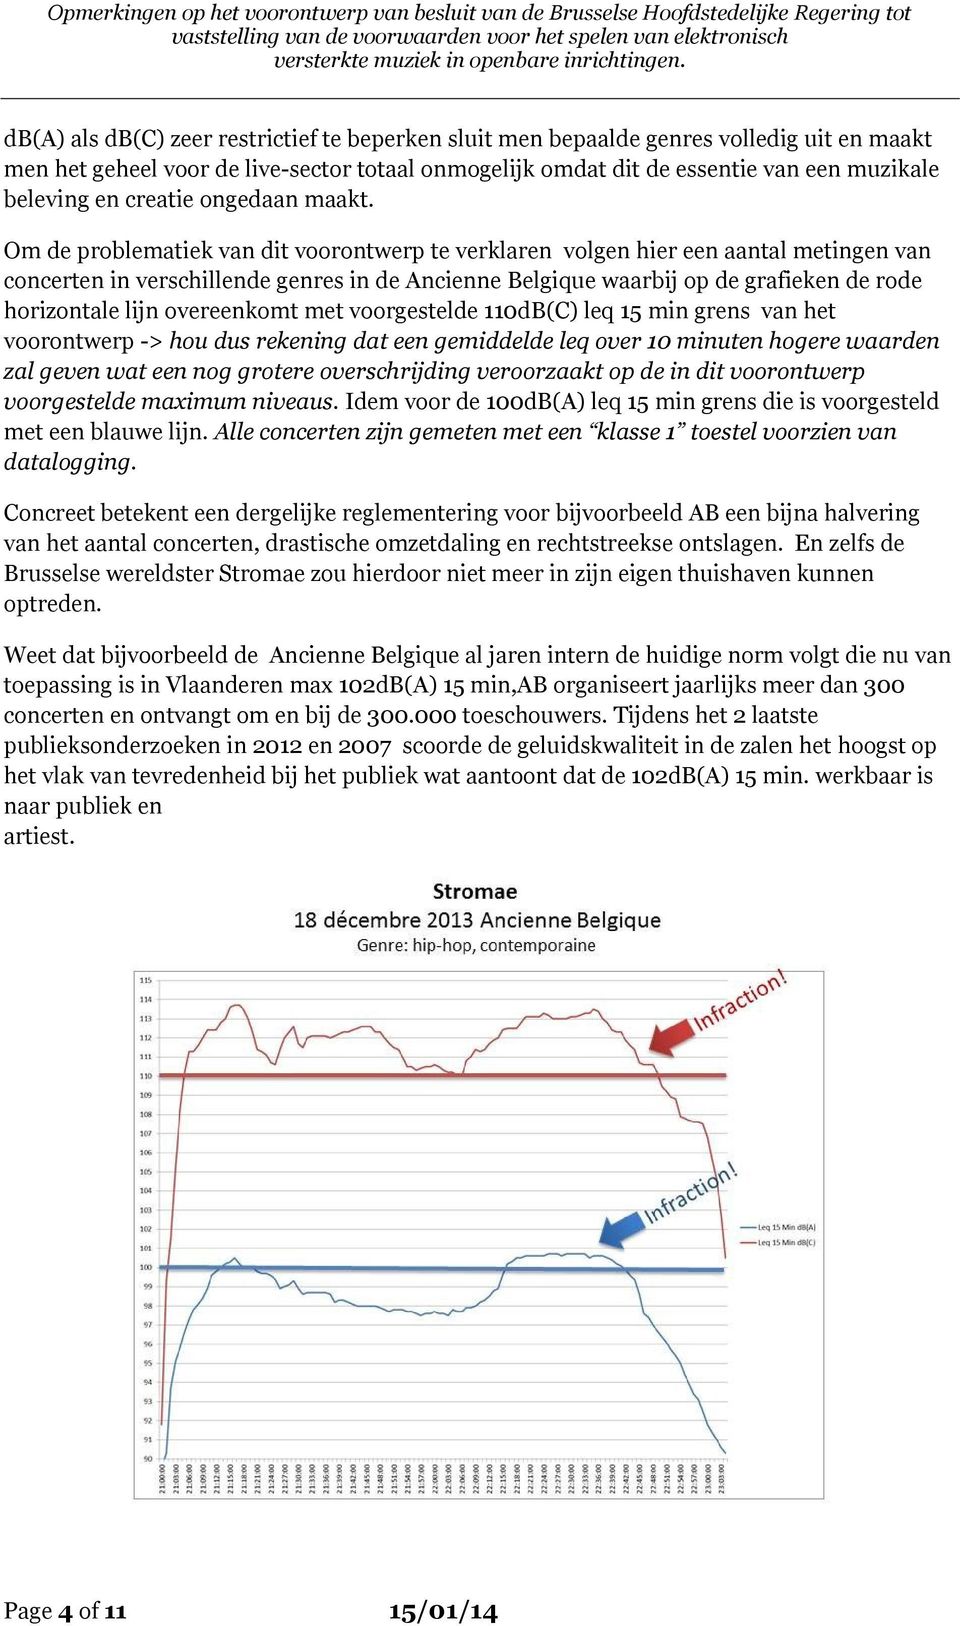 Om de problematiek van dit voorontwerp te verklaren volgen hier een aantal metingen van concerten in verschillende genres in de Ancienne Belgique waarbij op de grafieken de rode horizontale lijn